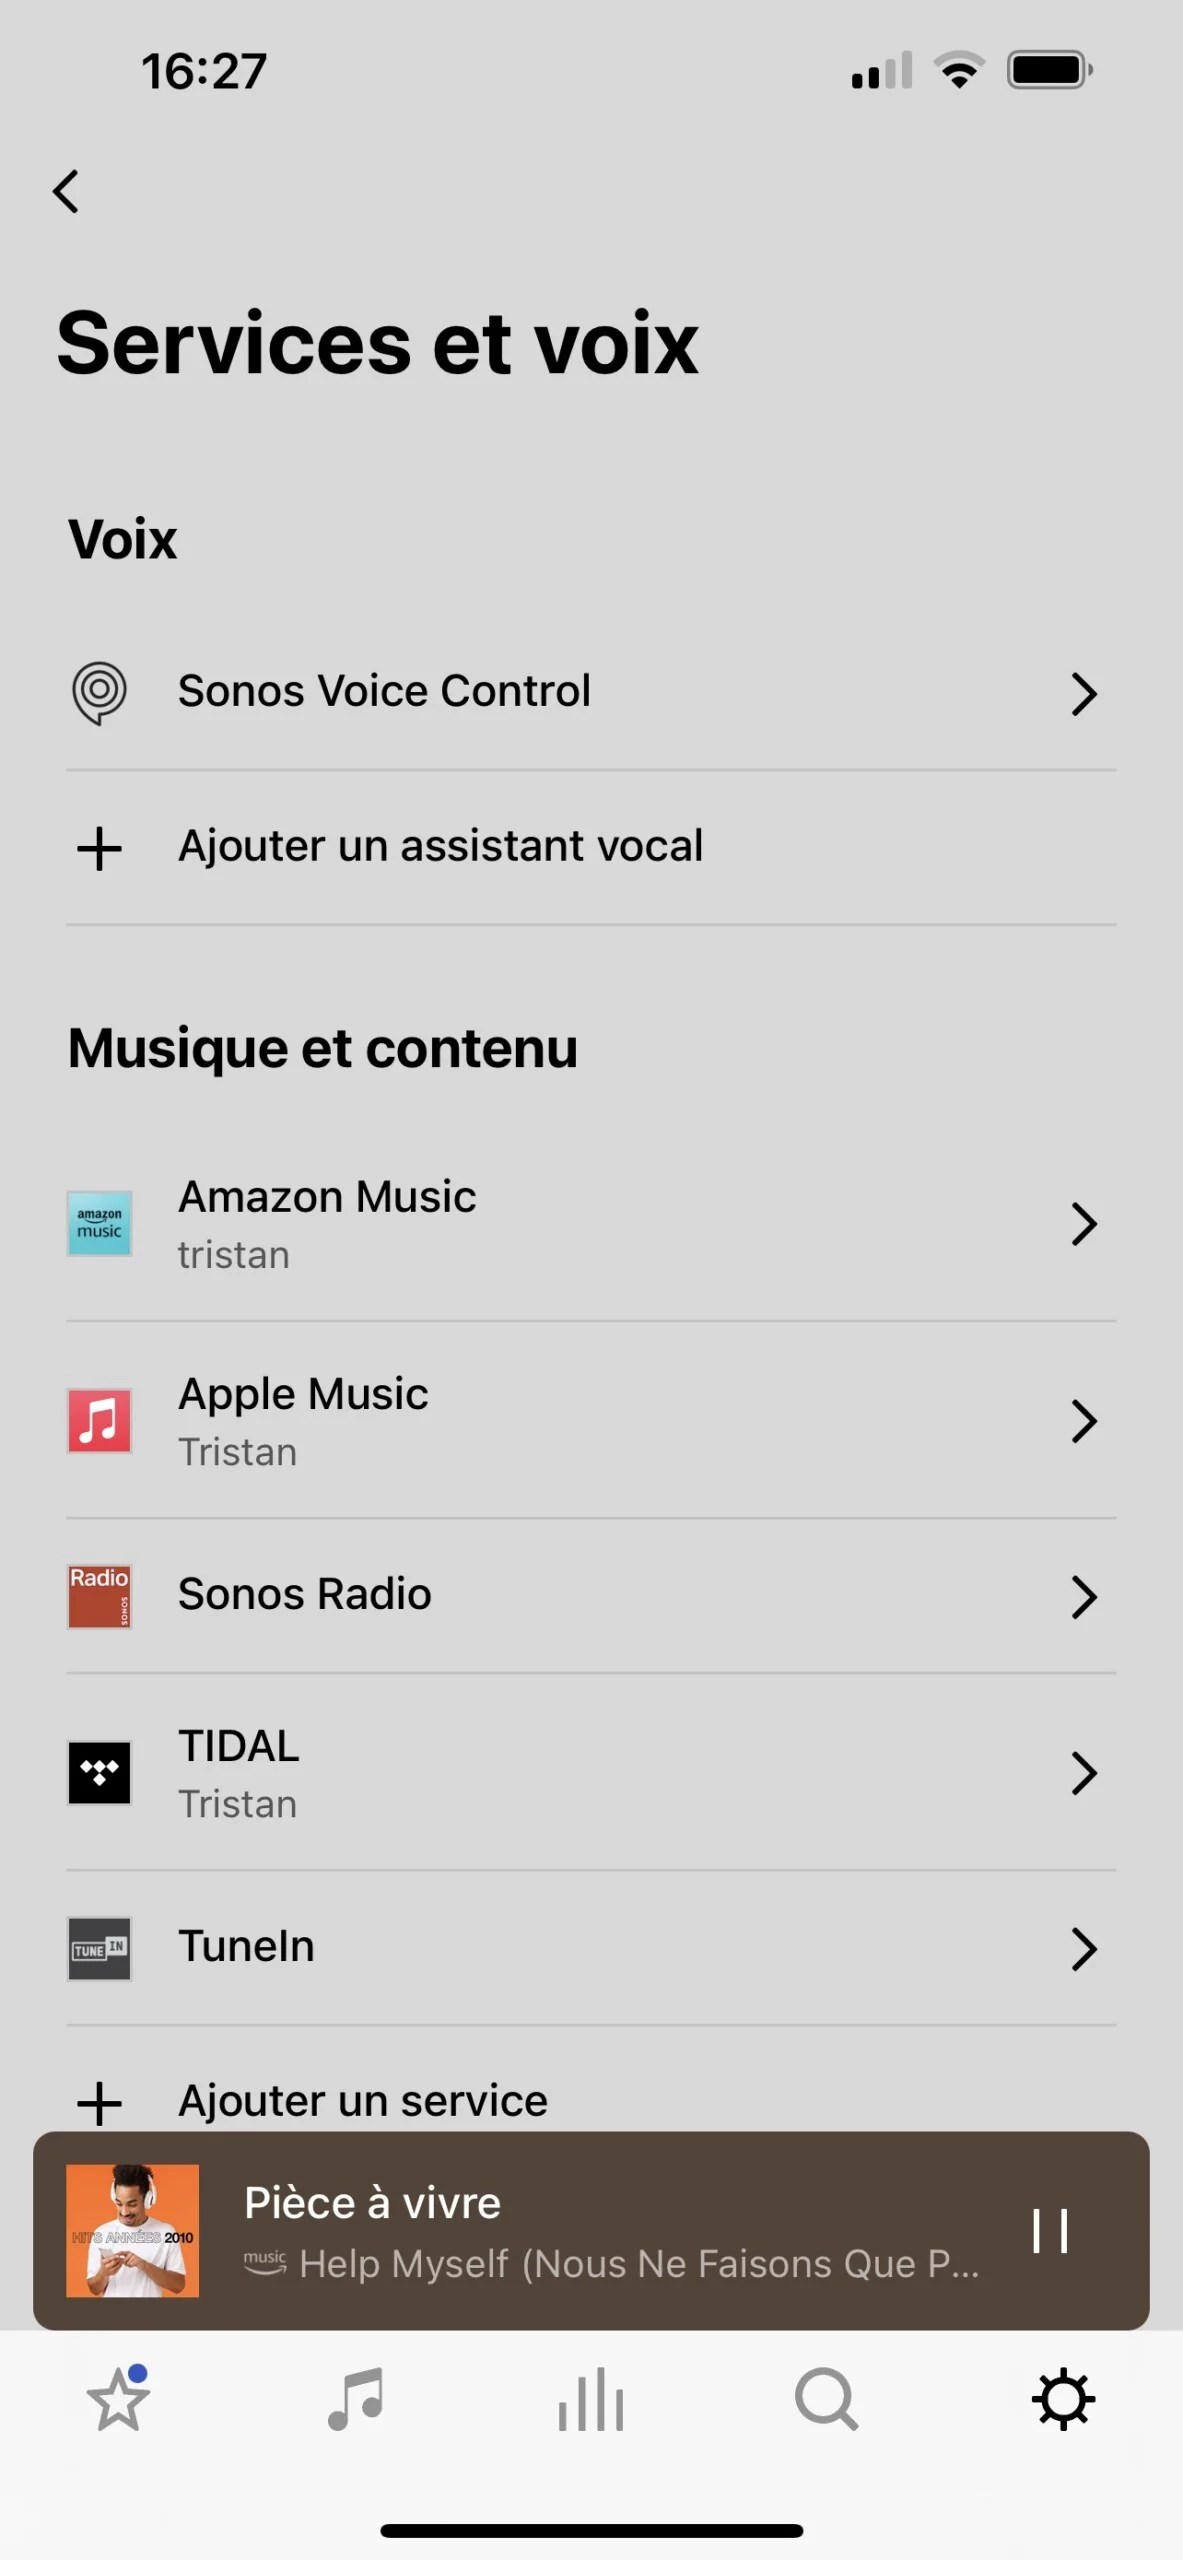 Pour écouter de la musique, le plus simple est d'ajouter son service à l'app Sonos.